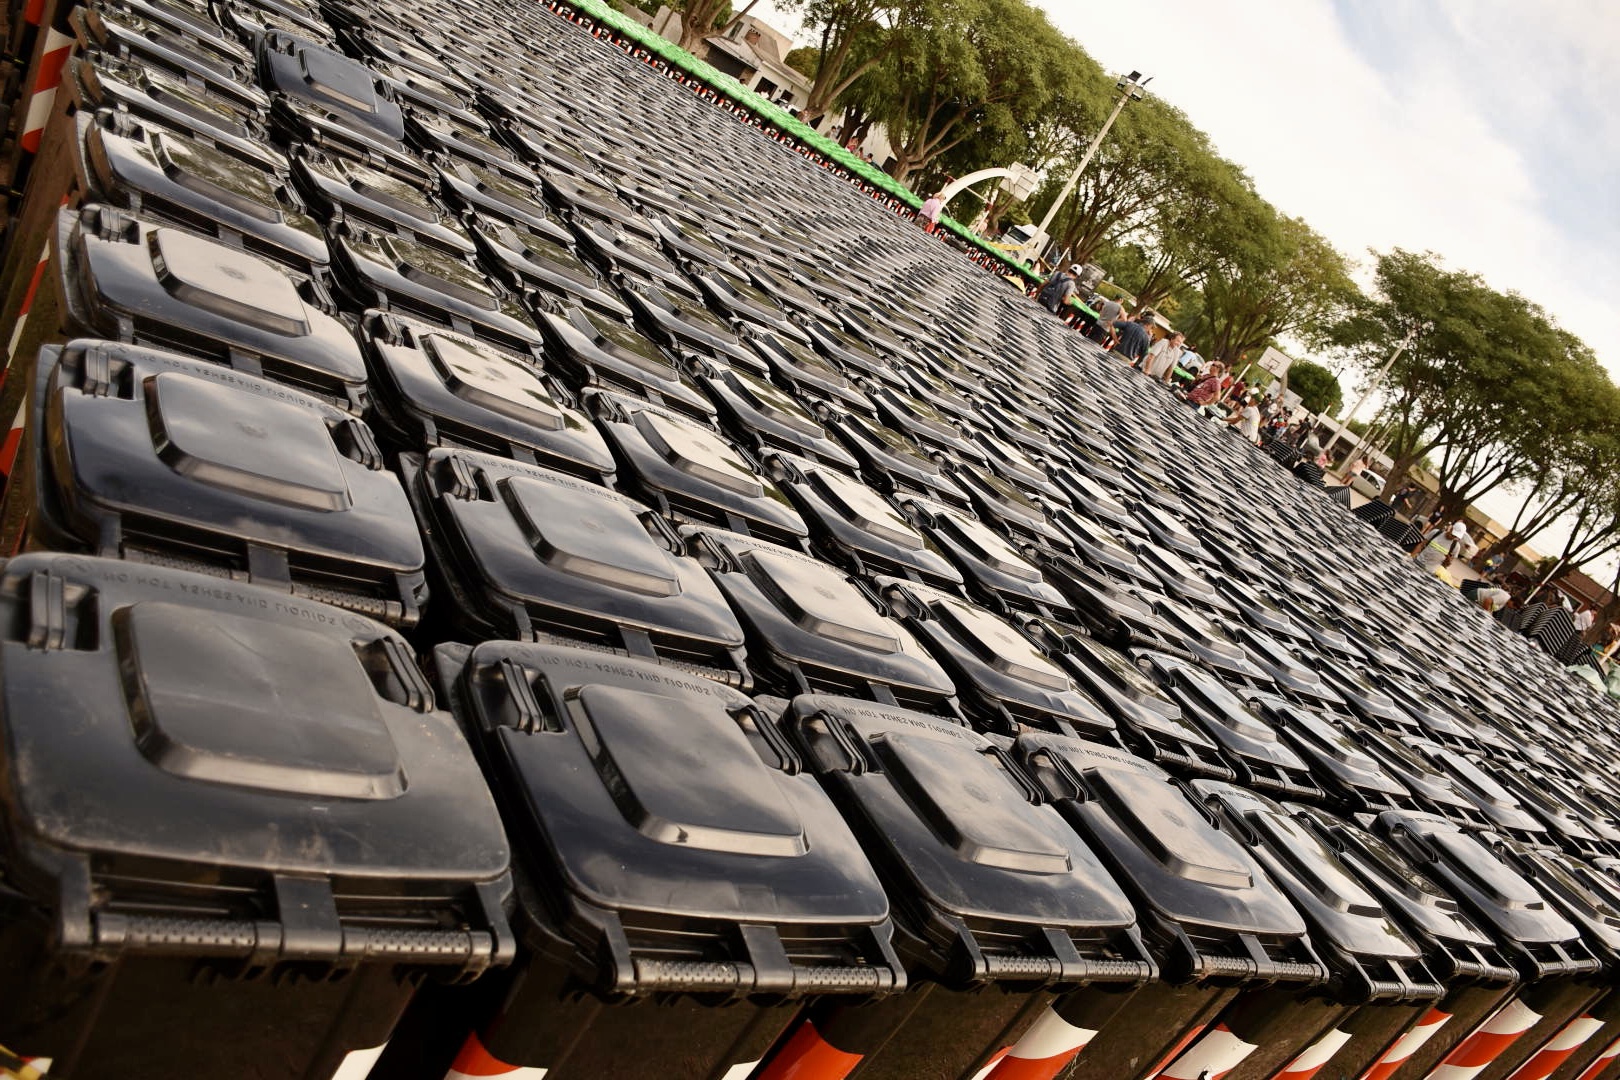 Más de 2000 familias recibieron contenedores para reciclar en Suárez